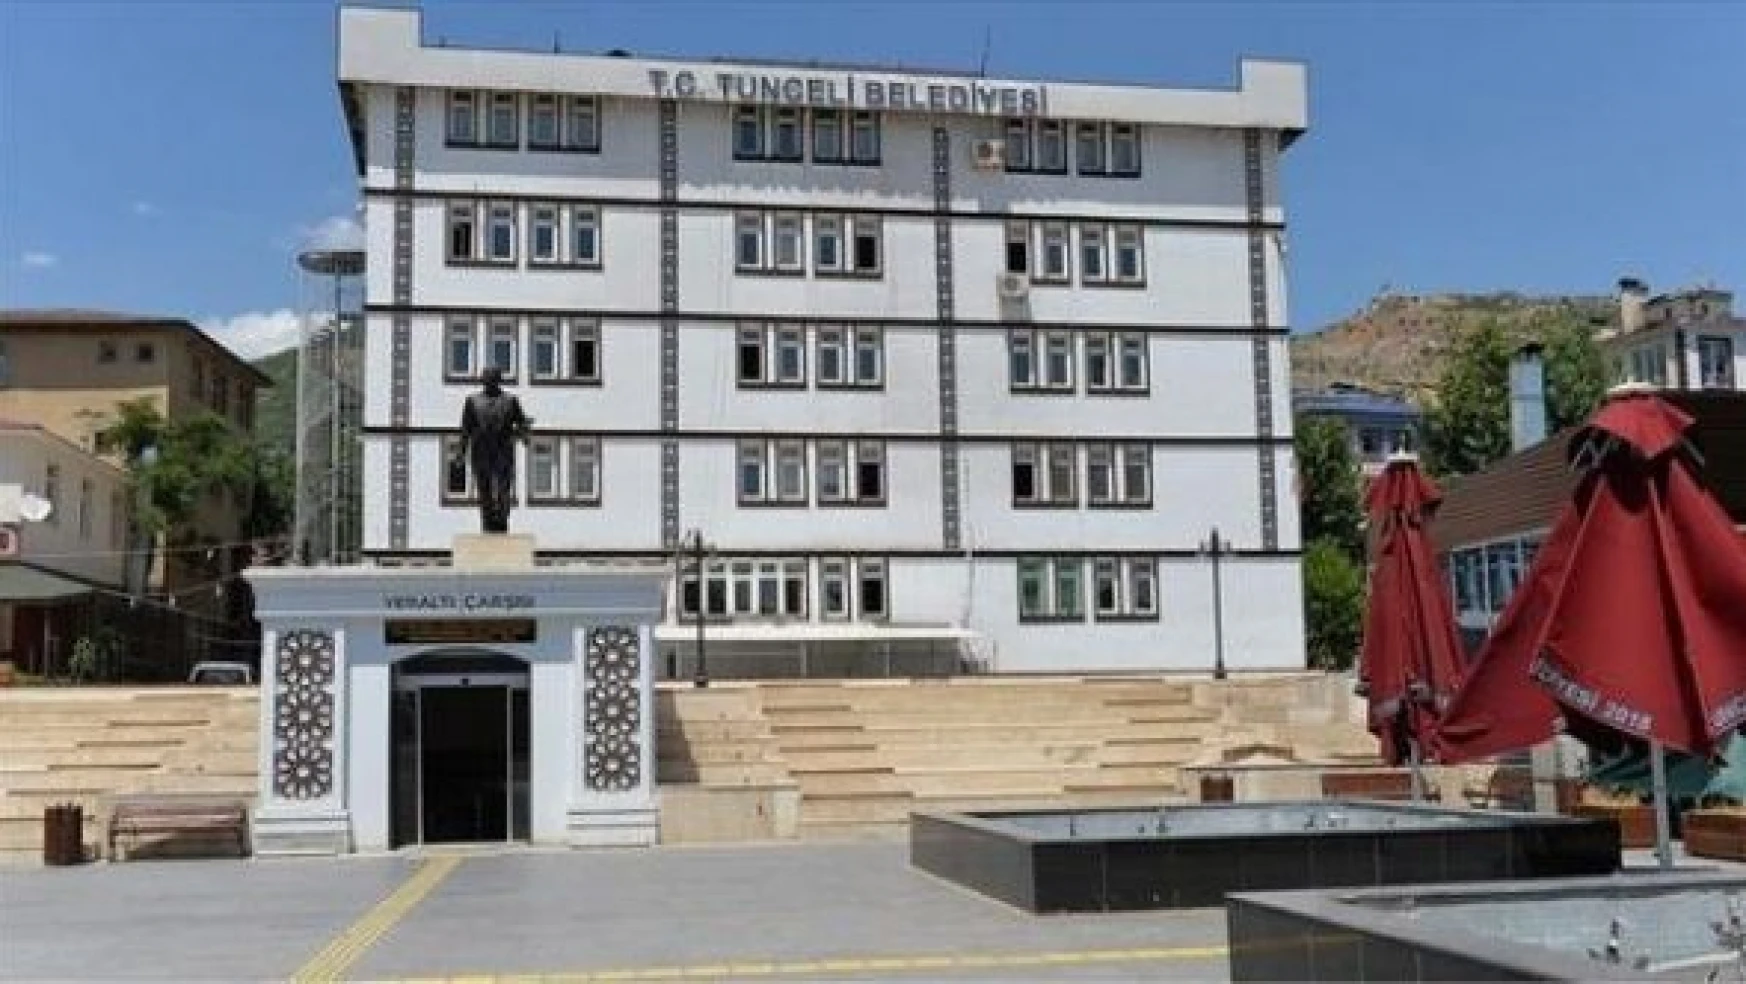 Tunceli Belediyesi'nin elektrikleri borç nedeniyle kesildi